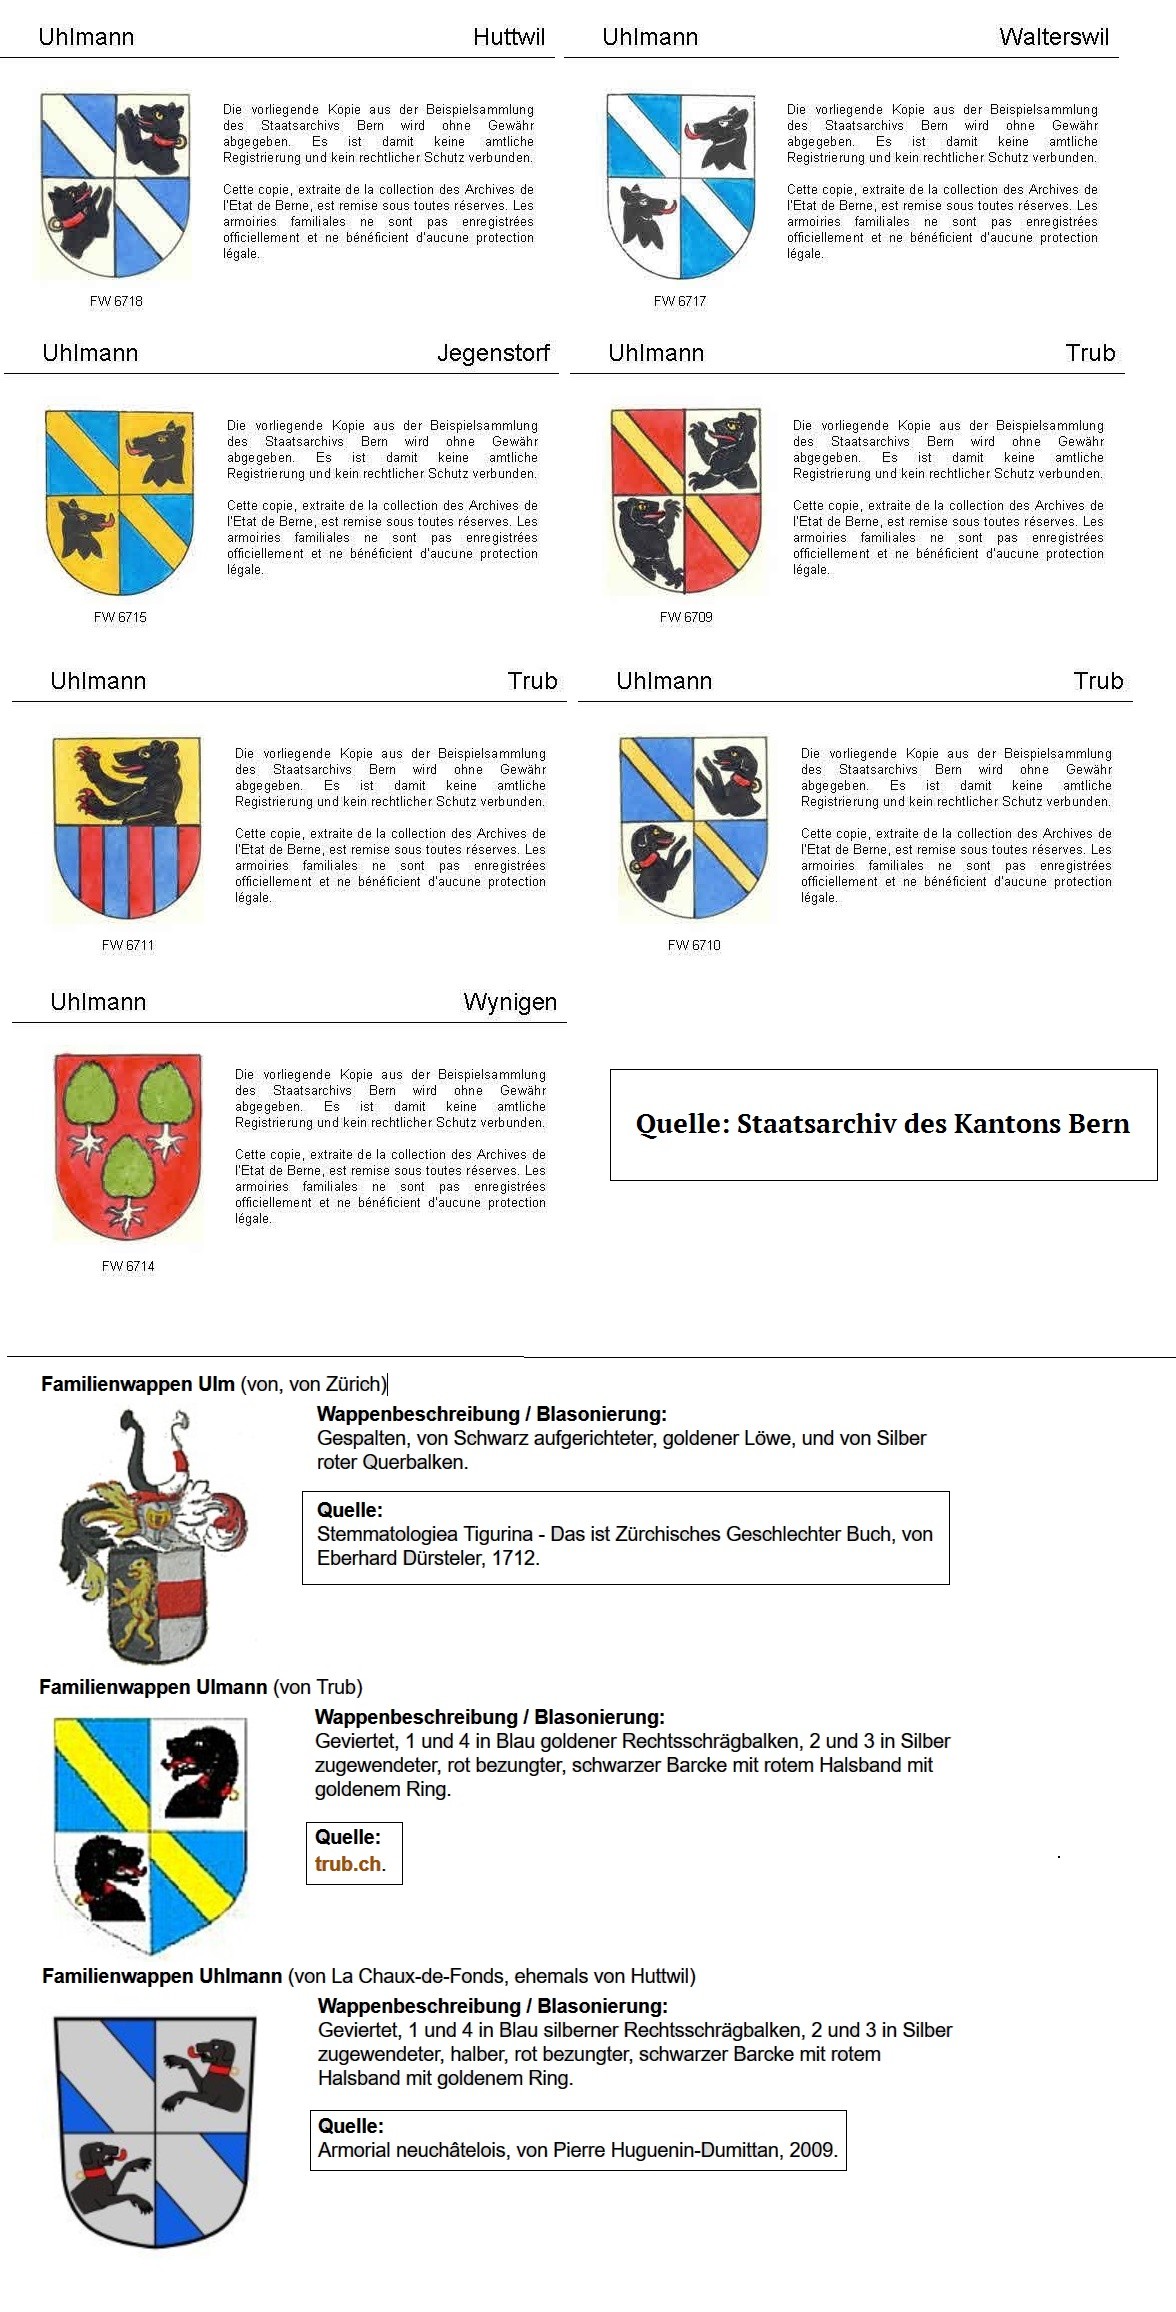 UHLMANN / ULMANN / ULLMANN Wappen in der Schweiz